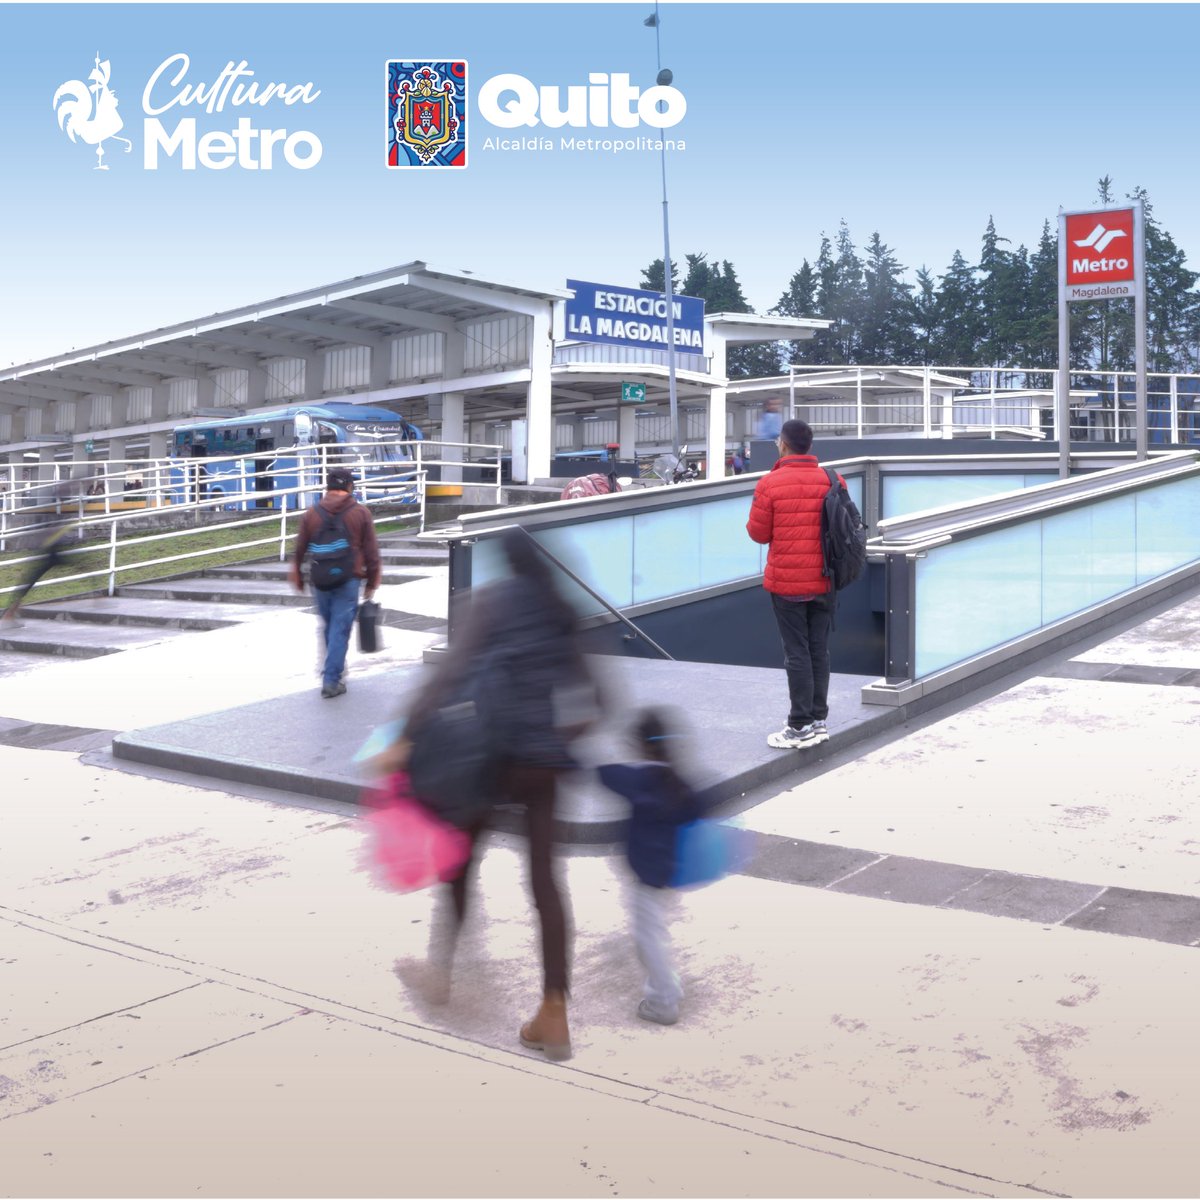 🚇 #ElMetroDeQuitoRenace| 07h00 ¿La conocías? Es nuestra estación Magdalena, es una de las 5 estaciones multimodales que tiene el Metro de Quito, que te conecta con otros medios de transporte público en superficie. ¿Qué otras conoces? #CulturaMetro #QuitoRenace